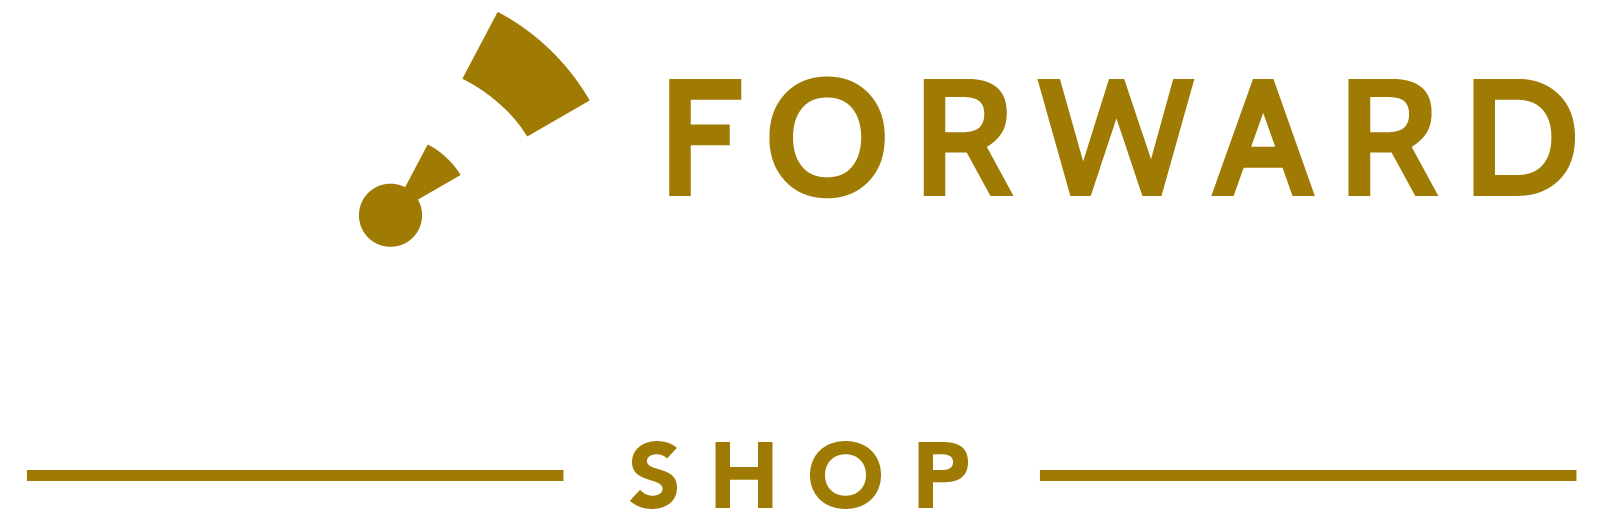 Forward Observer Shop